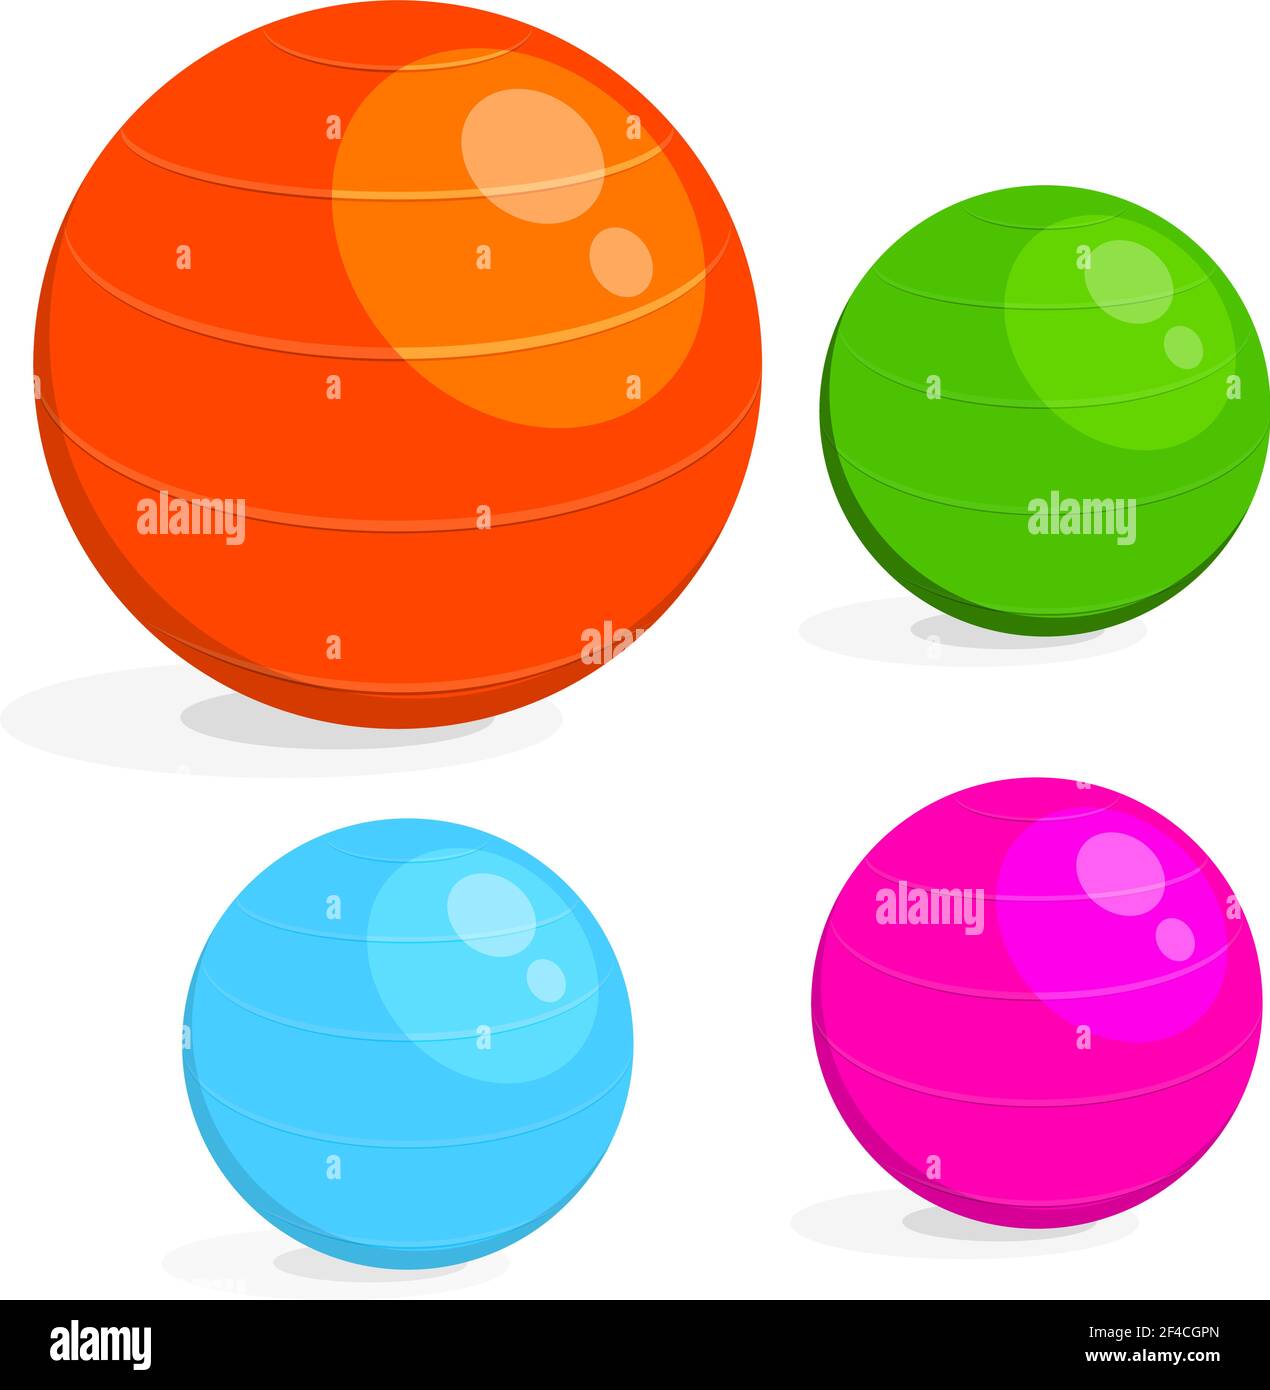 Ensemble d'images de dessin animé de la balle pour la forme physique. Dessin coloré de la fitball d'équipement de sport sur un fond blanc. Illustration vectorielle Illustration de Vecteur